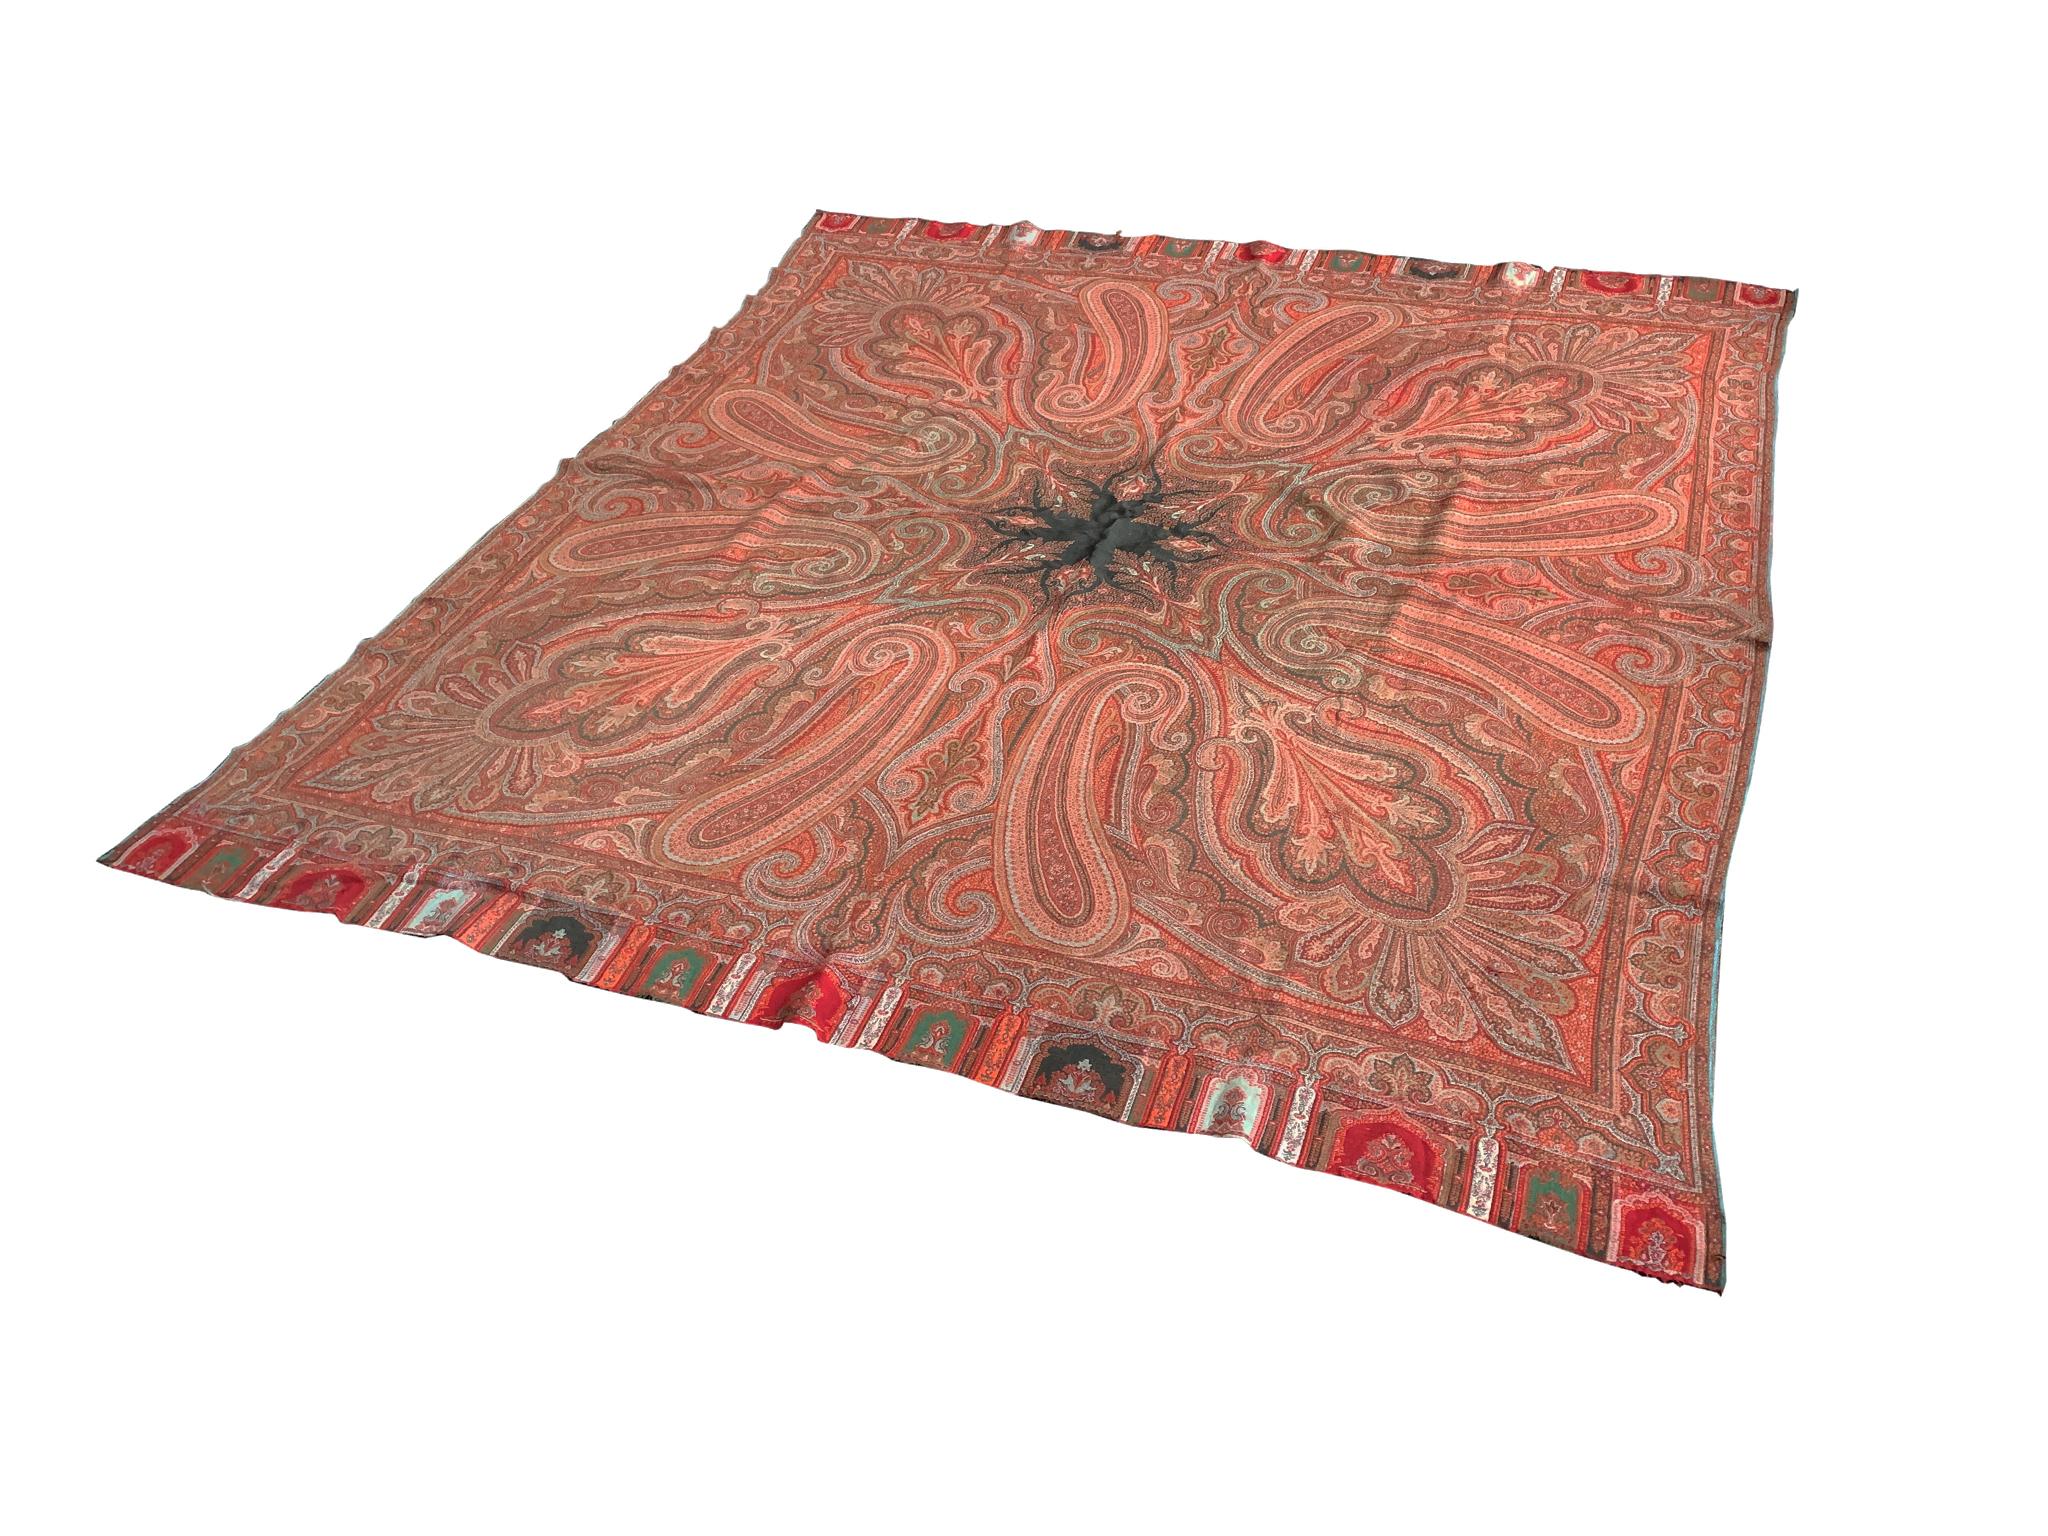 Eine dekorative Decke im Vintage-Stil mit einem auffälligen Paisleymuster. Die Farbpalette ist eine bunte Mischung aus Rot, Orange und Rosa mit Akzenten in Grün, Weiß und Schwarz. Es ist eine sehr schöne Komposition, die einen Raum mit